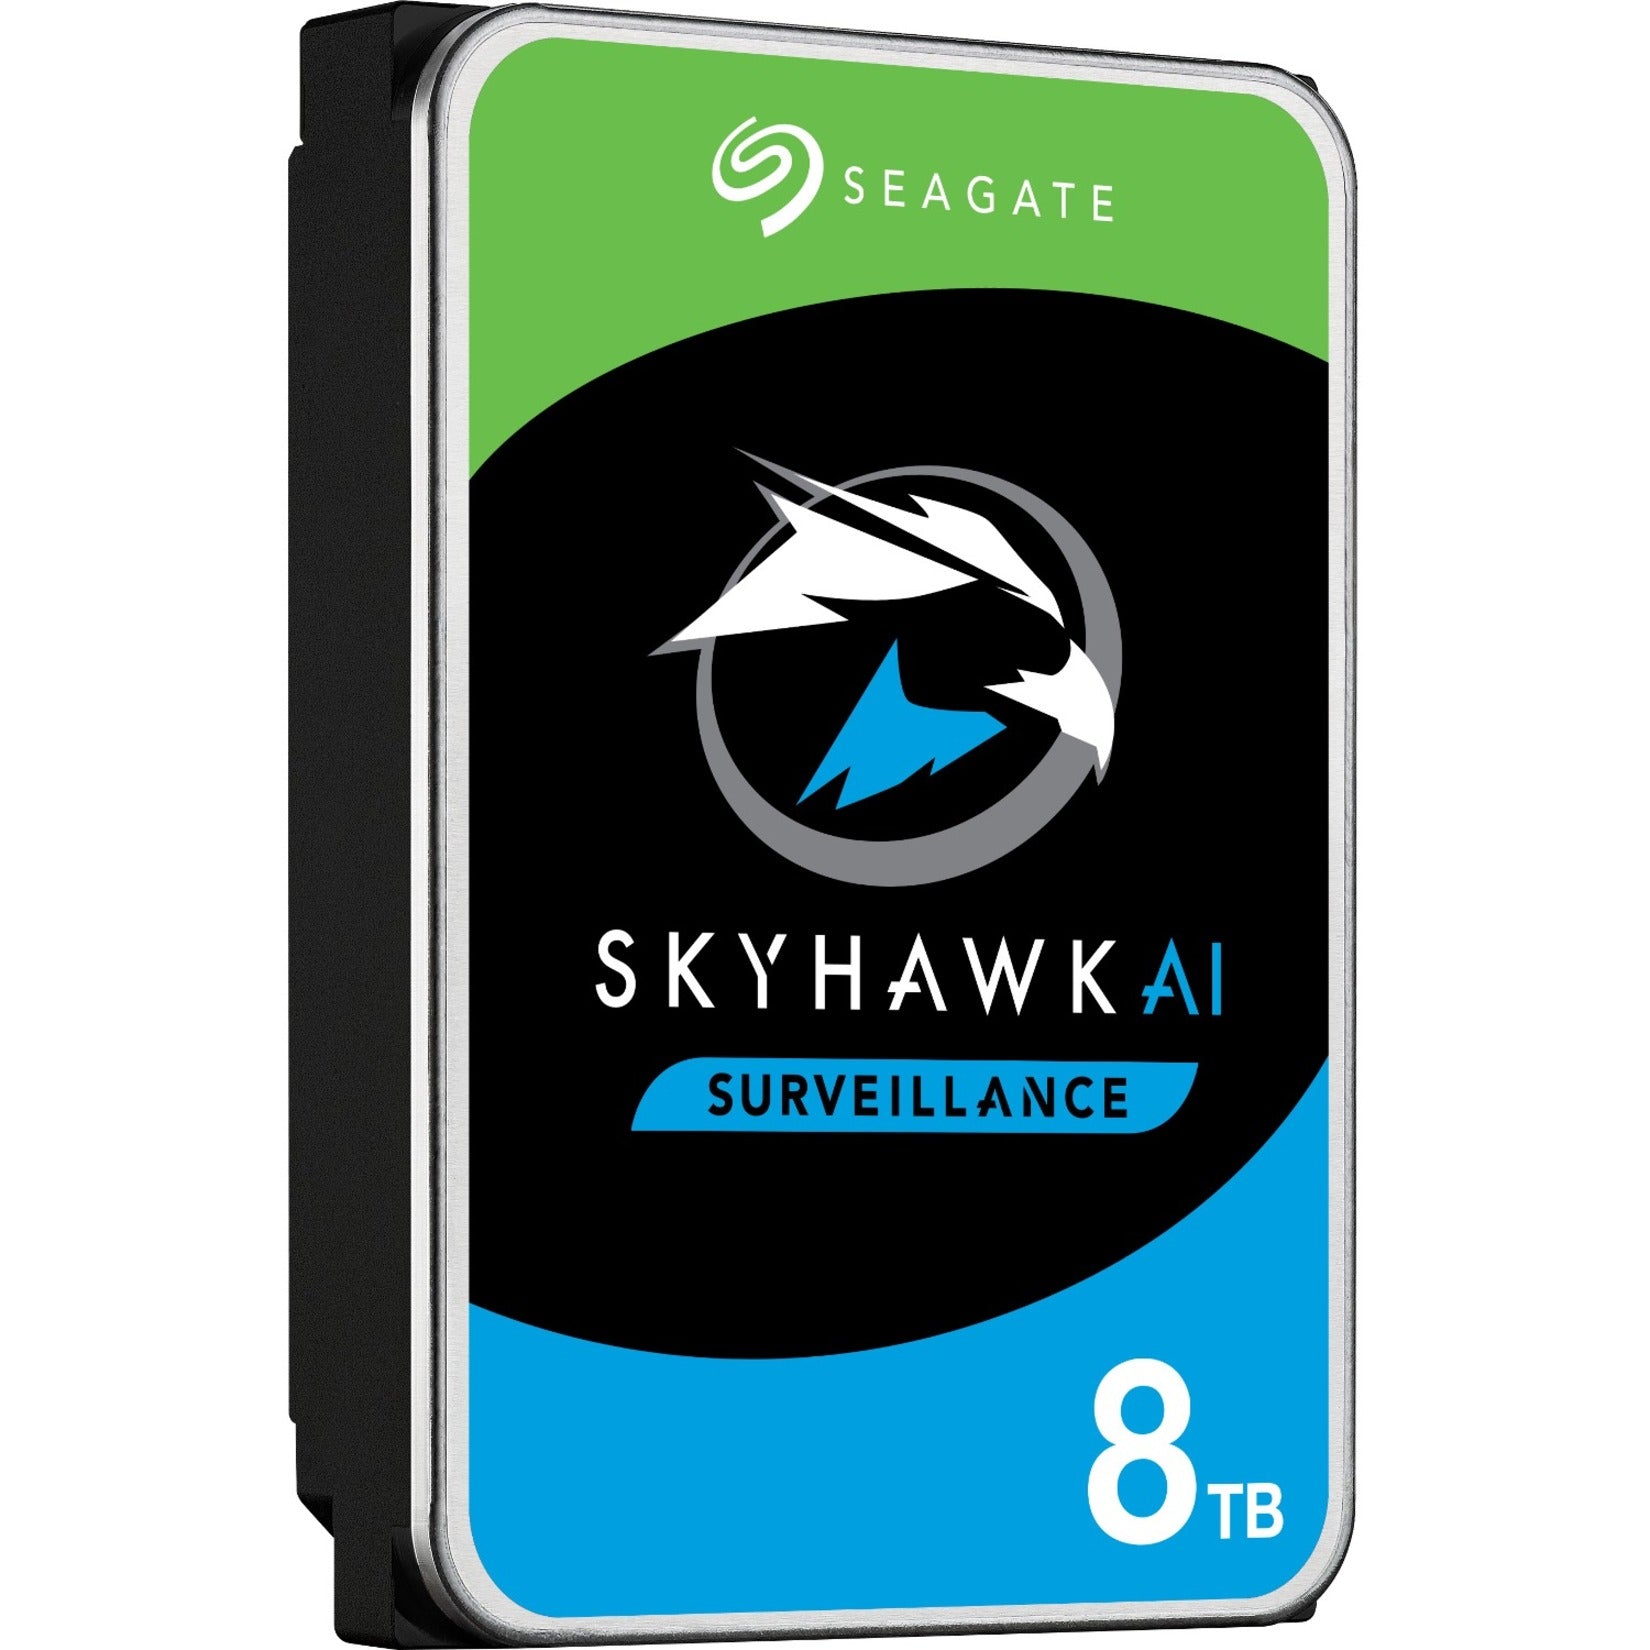 西数 ST8000VE001 天鹰 AI 8TB 硬盘驱动器，24x7 监控存储 西数 - 西部数据 天鹰 - SkyHawk AI